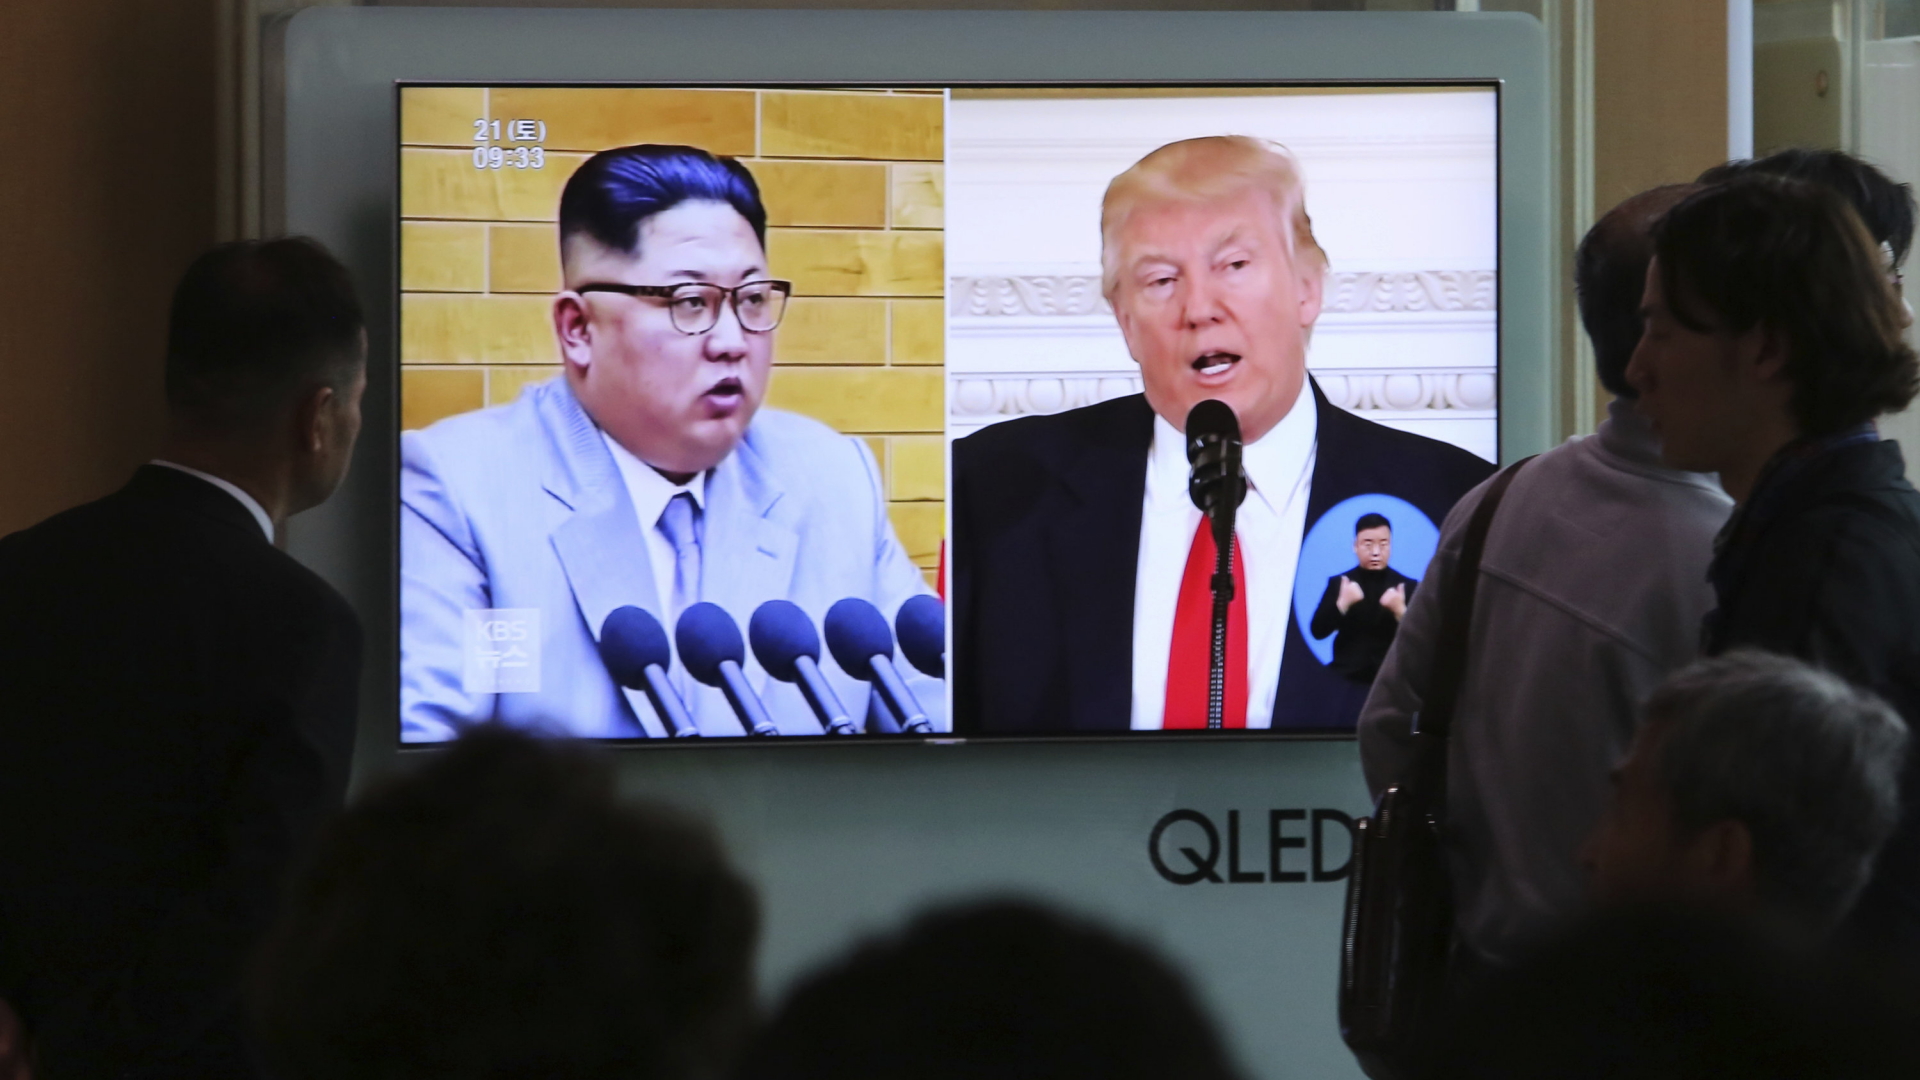 Die Menschen sehen auf einem TV-Bildschirm Archivaufnahmen von US-Präsident Donald Trump und dem nordkoreanischen Führer Kim Jong Un während einer Nachrichtensendung auf dem Seouler Bahnhof. | dpa